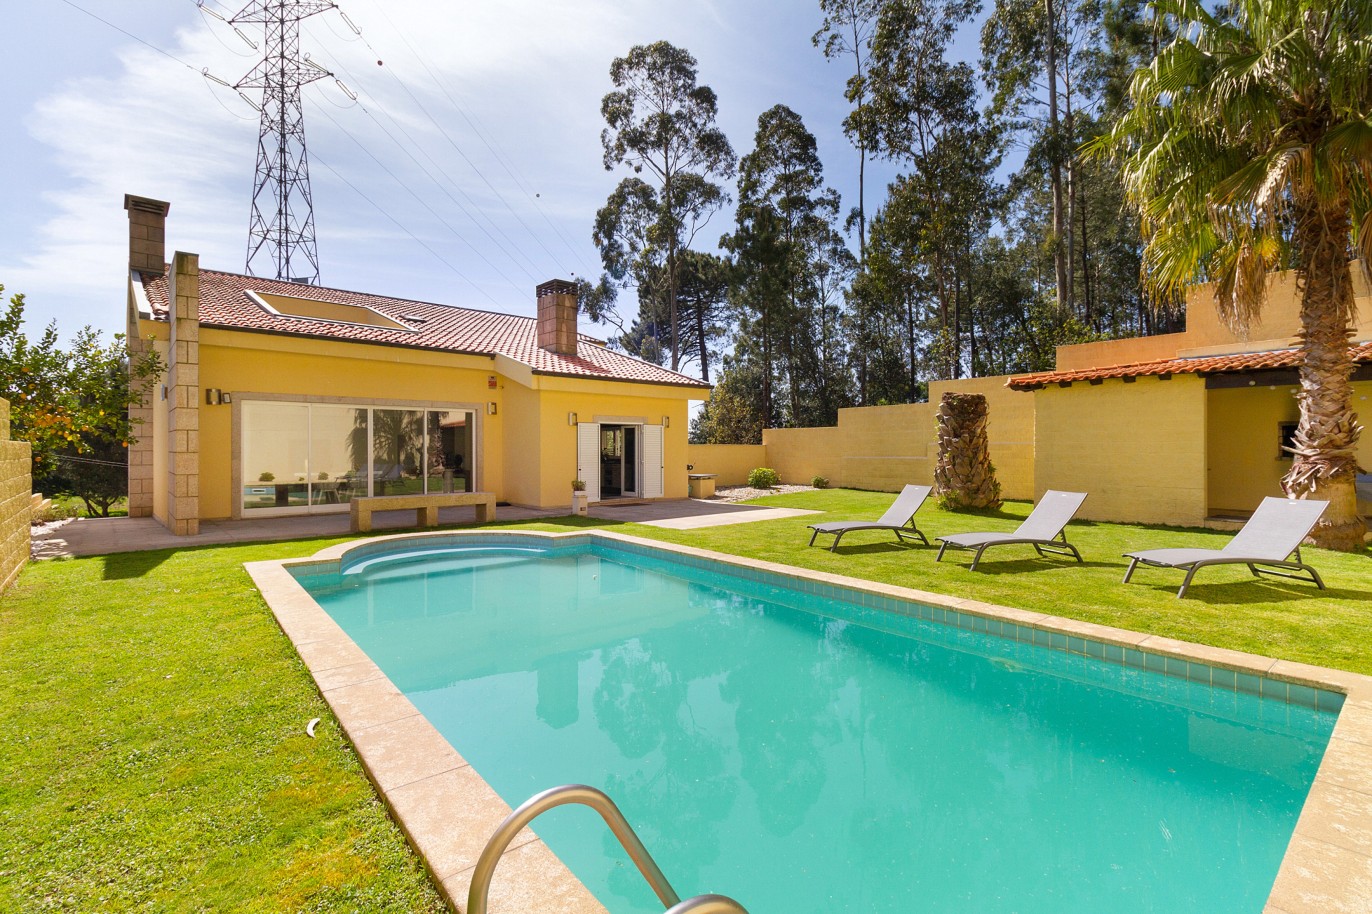 Villa de 4+1 dormitorios con piscina y jardín, en venta, Perosinho, V. N. Gaia, Portugal_220763